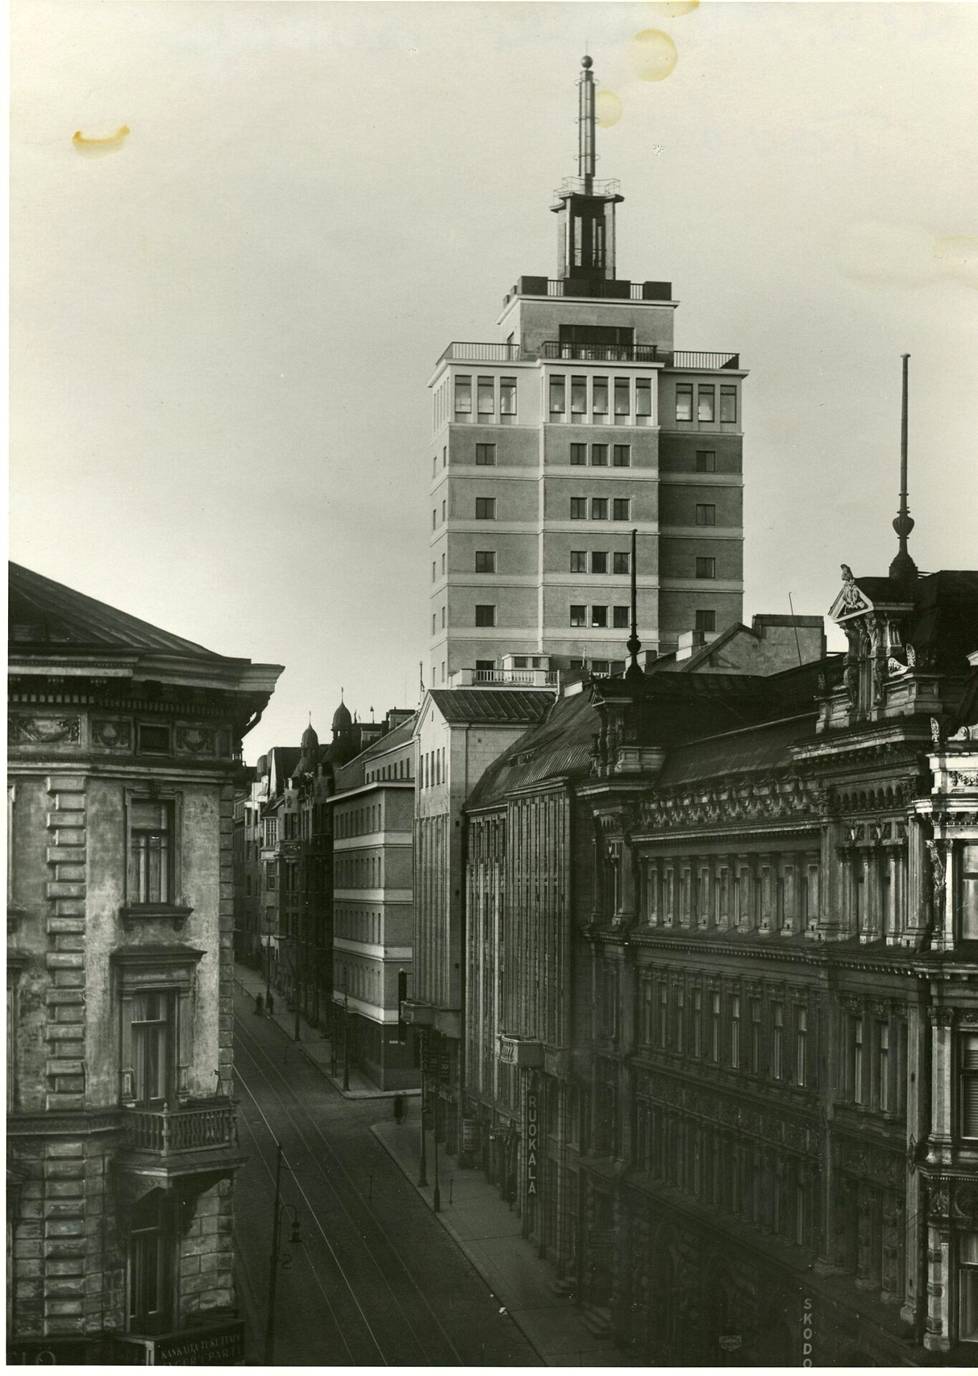 Hotelli Torni hallitsi Helsingin julkisivua niihin aikoihin, kun Elias Kopelowsky muutti hotelliin asumaan.